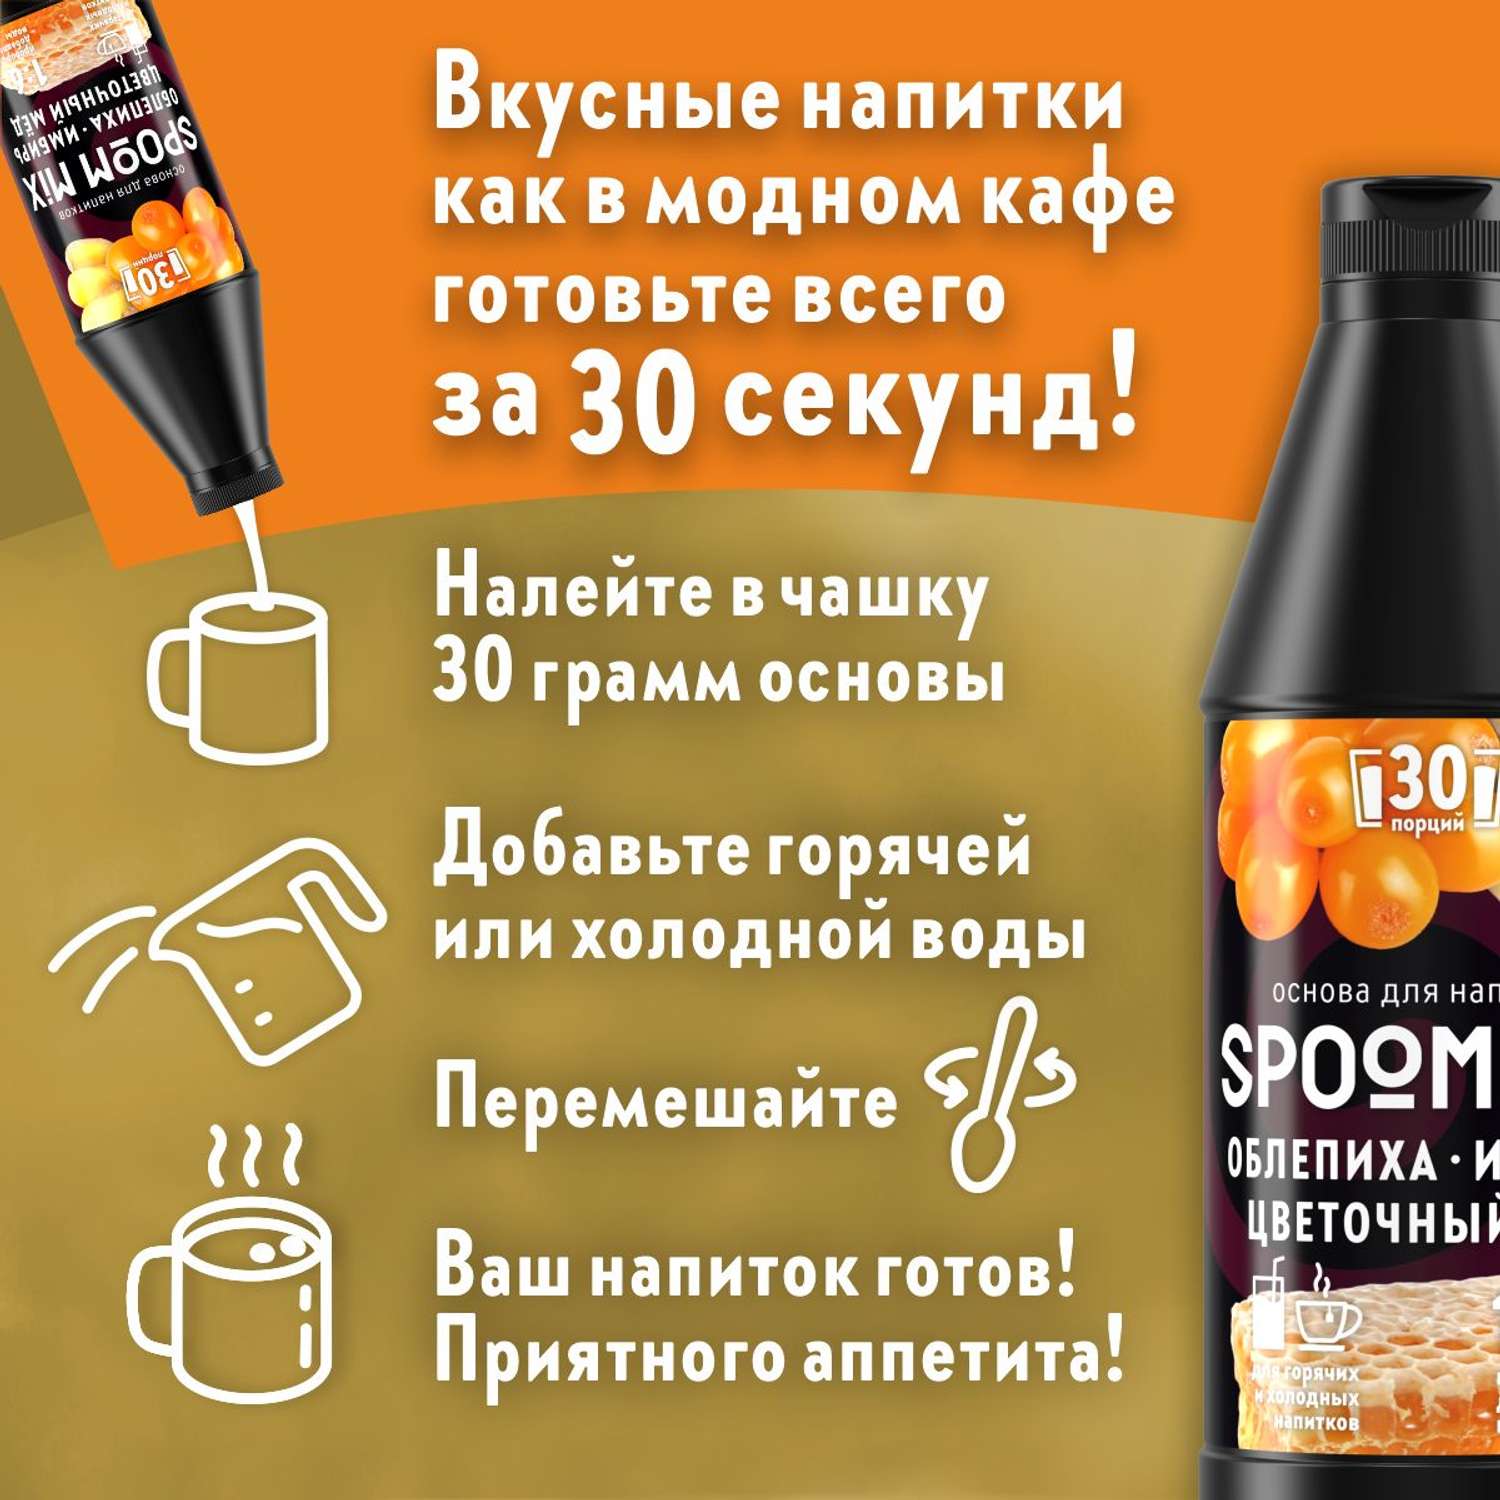 Основа для напитков SPOOM MIX Облепиха имбирь цветочный мёд 1 кг - фото 2